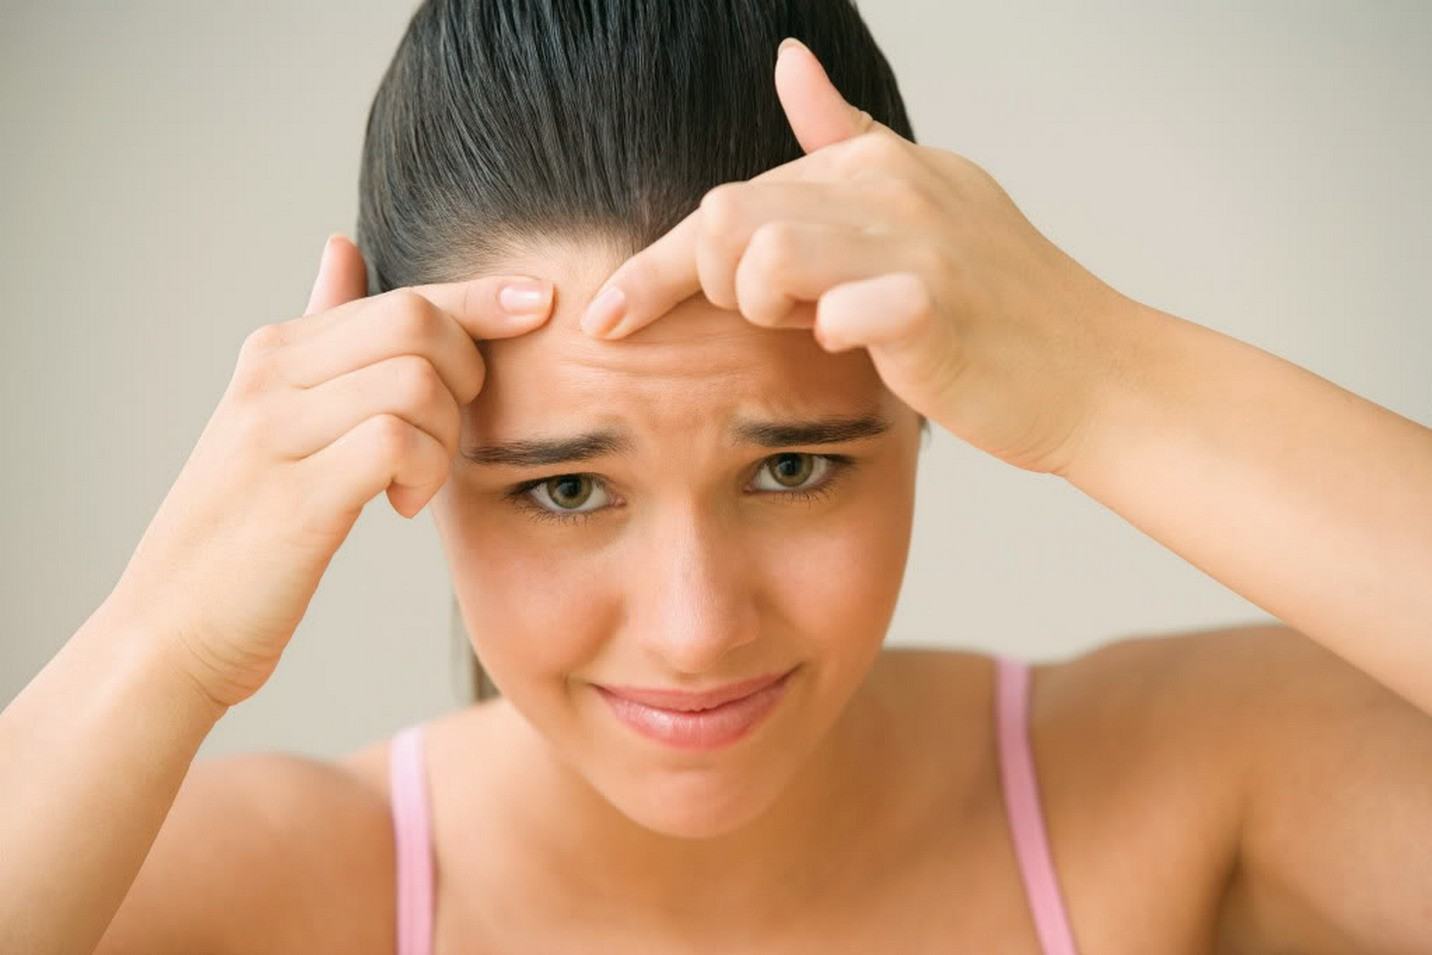 Mọc mụn ở bất kỳ vị trí nào trên khuôn mặt cũng có thể ngầm cảnh báo một vài vấn đề sức khỏe đang xảy ra trong cơ thể bạn - Ảnh 6.